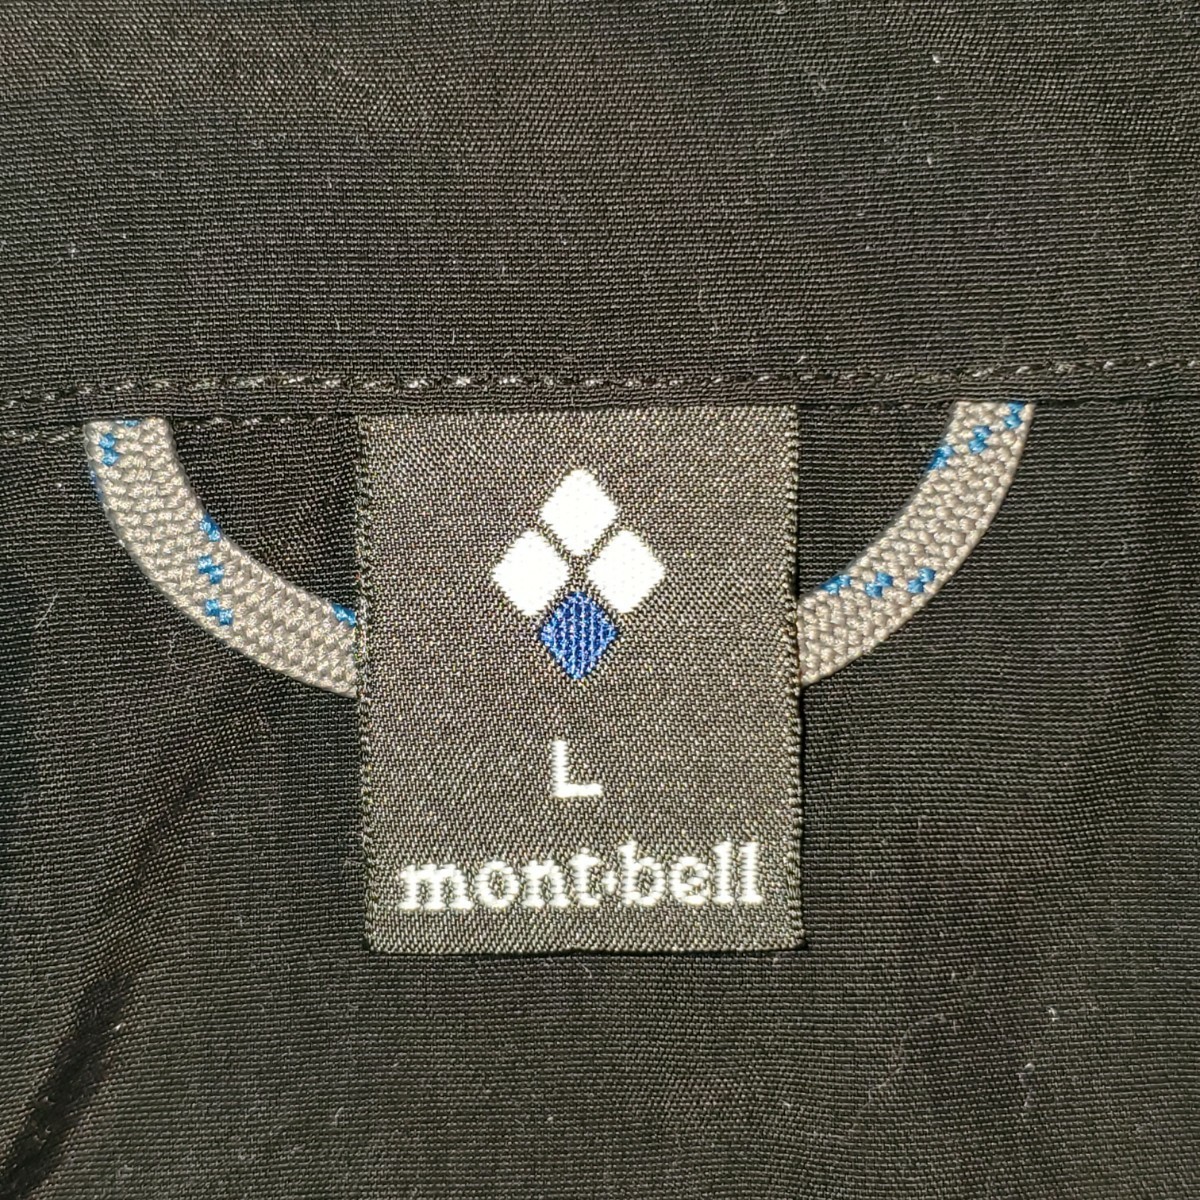 mont・bell モンベル ベスト メンズLサイズ